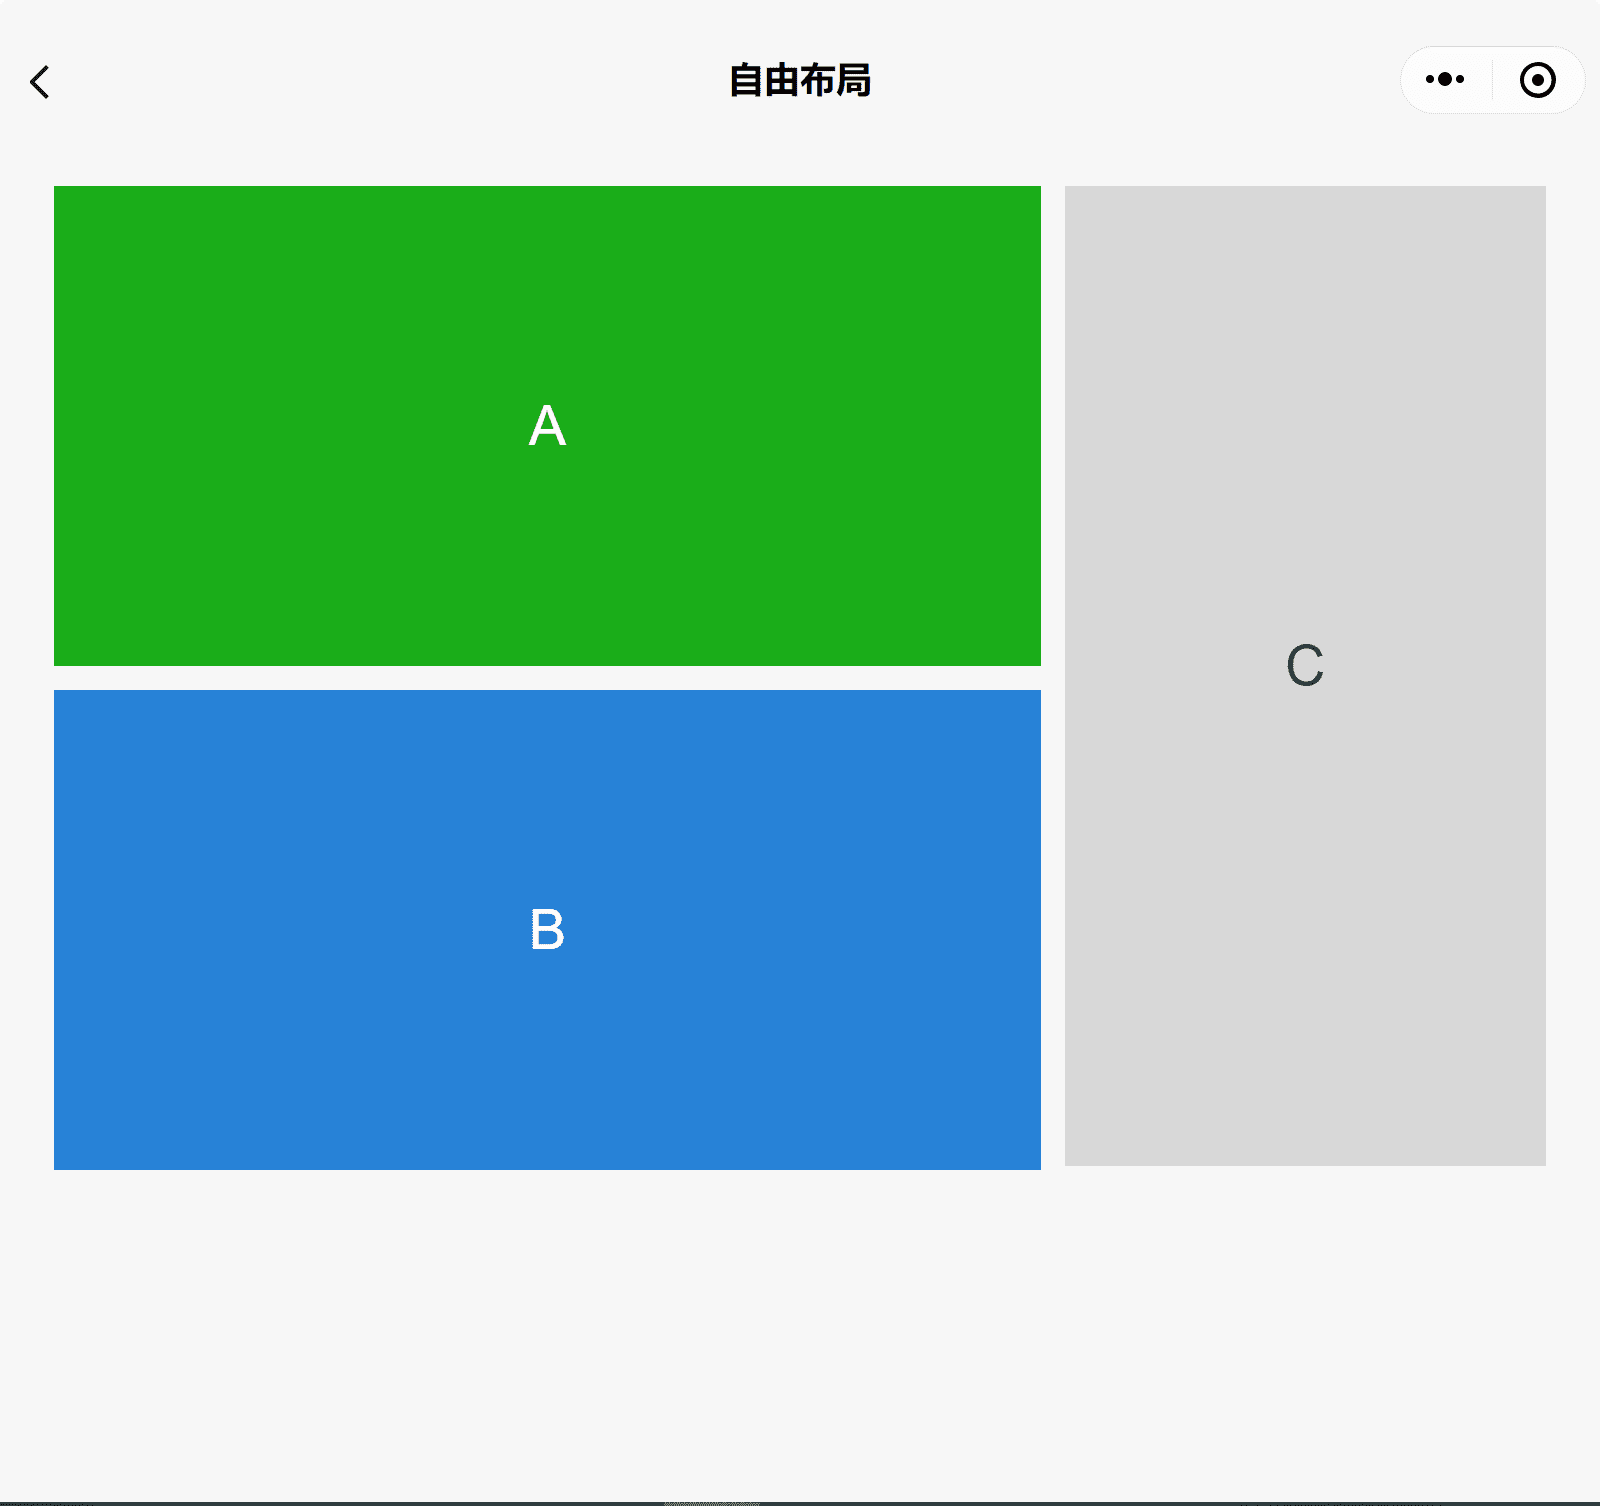 Aplikasi demo komponen WeChat di jendela lebar menampilkan tiga kotak A, B, dan C dengan A yang bertumpuk di atas B dan C di bagian samping.